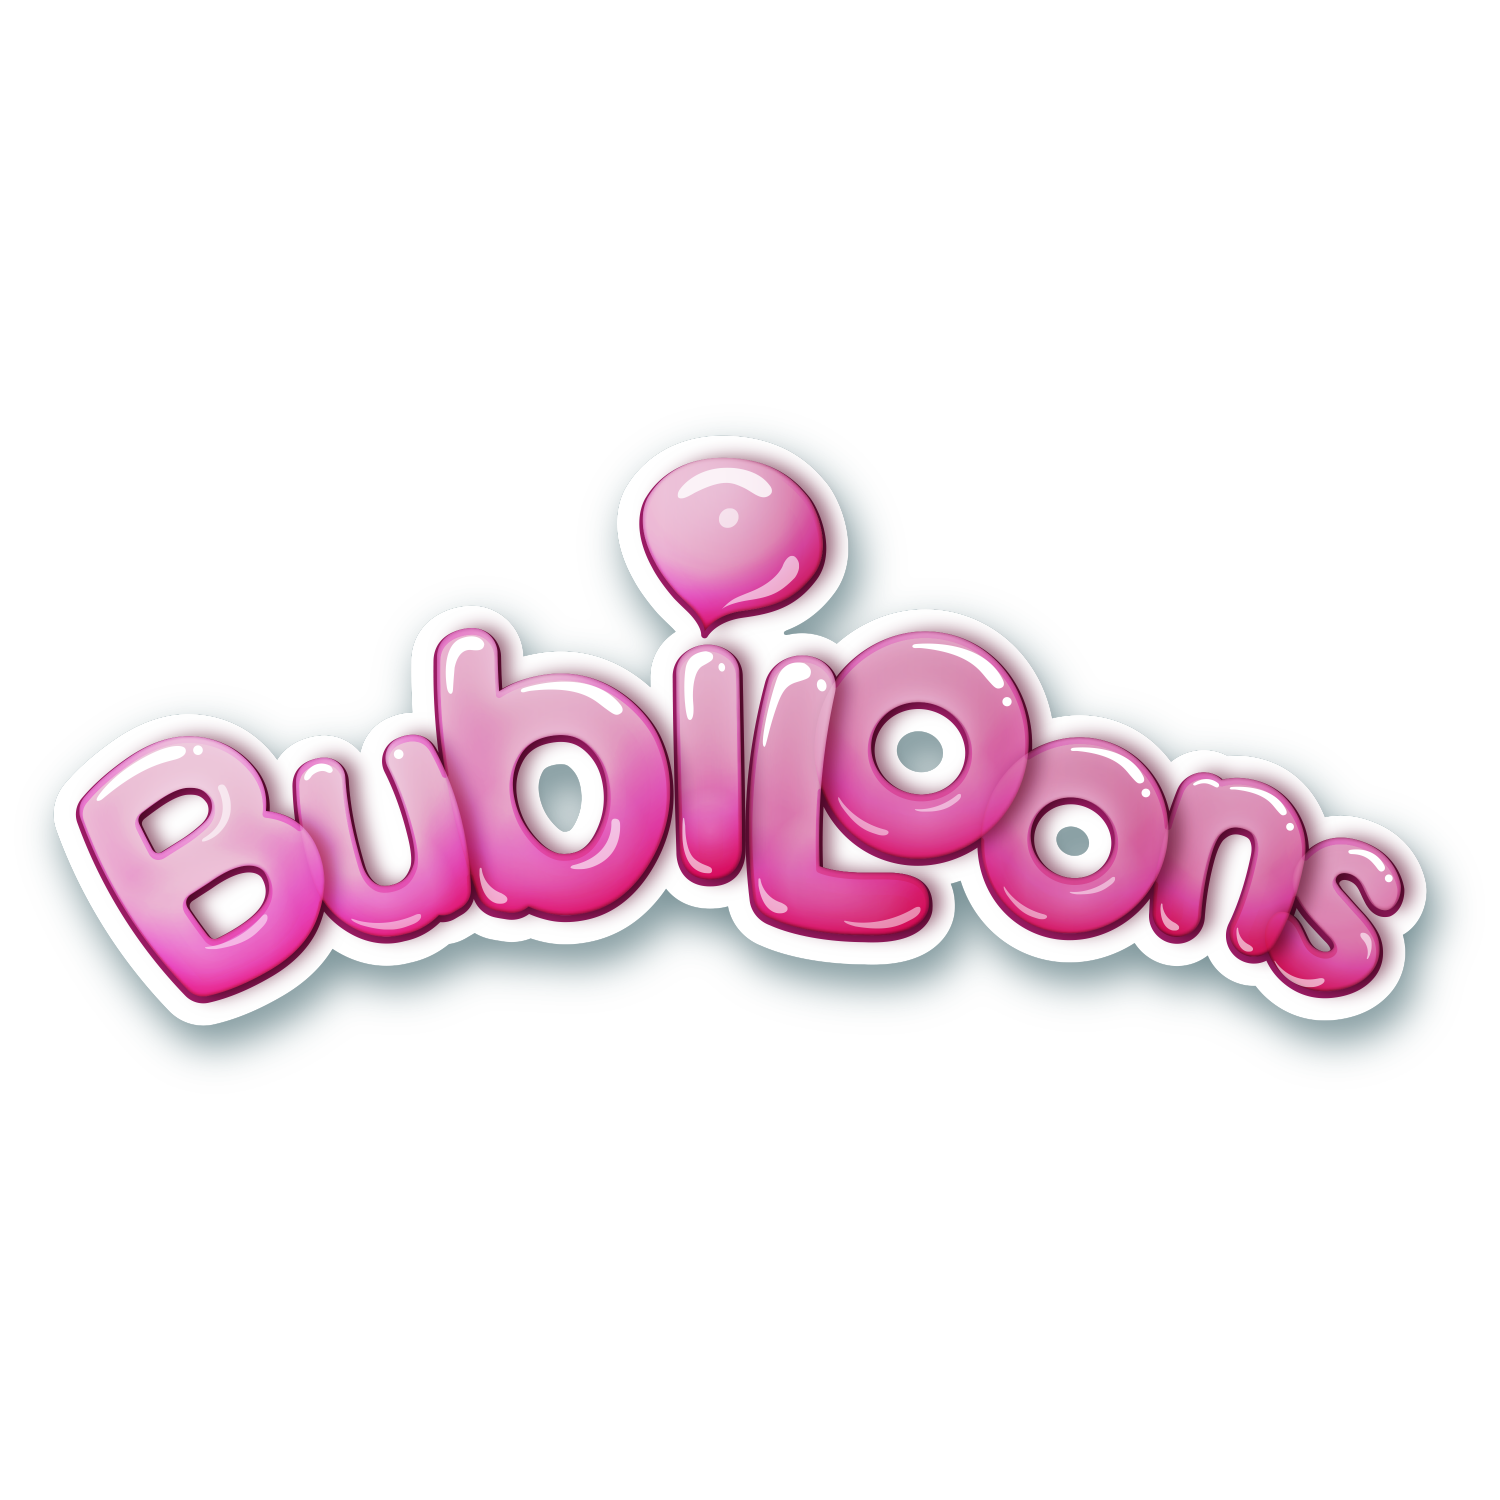 Bubiloons